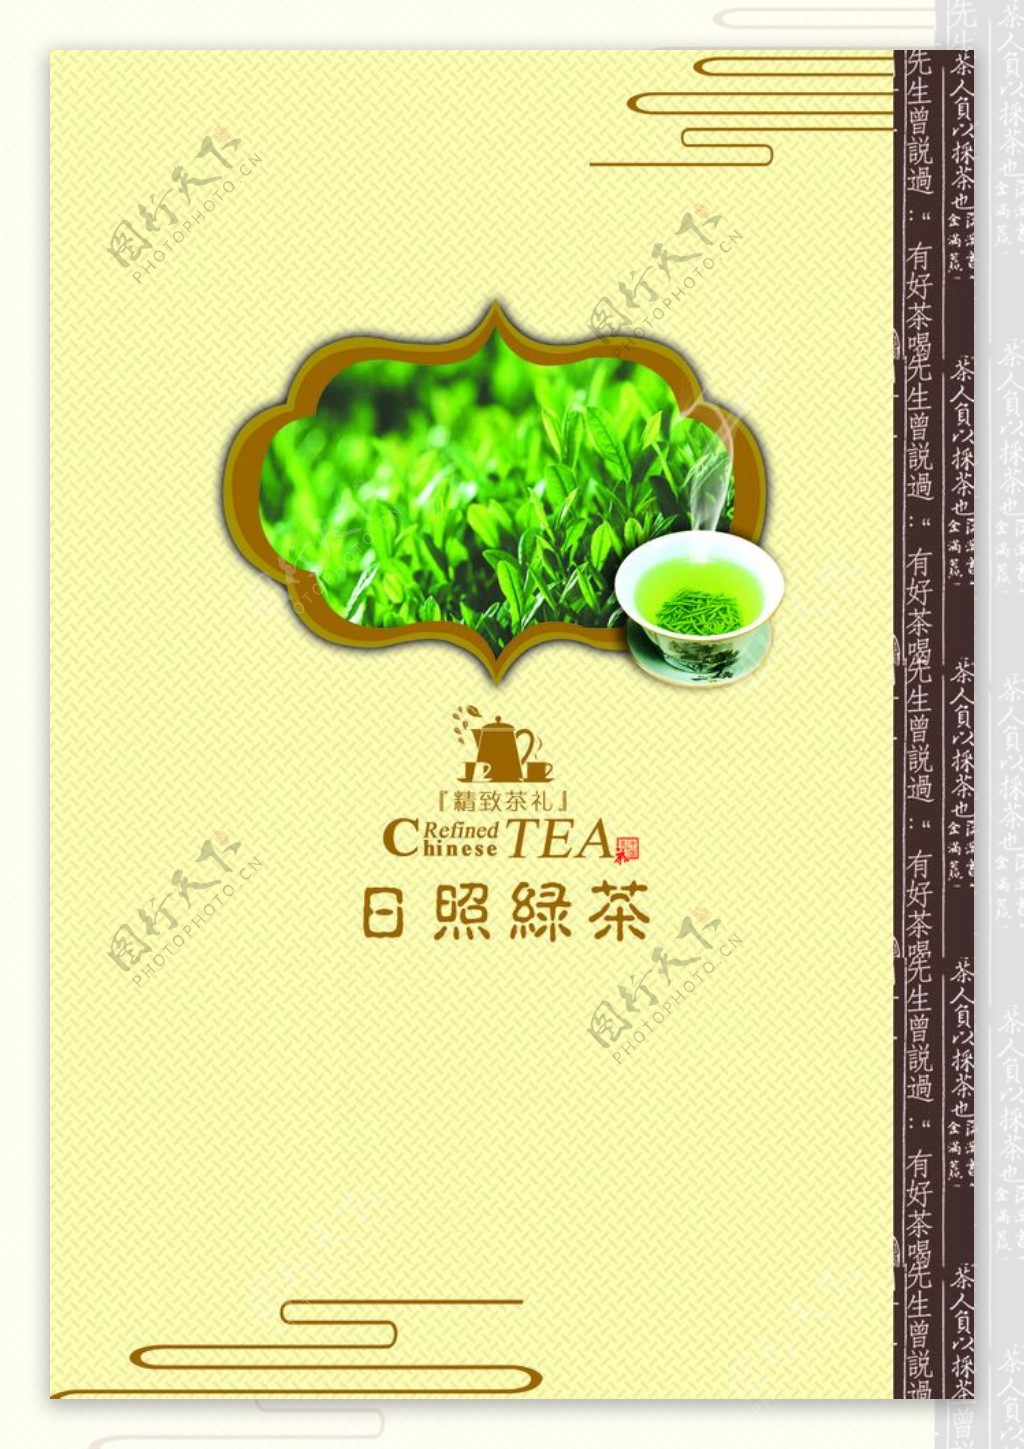 高档绿茶包装图片